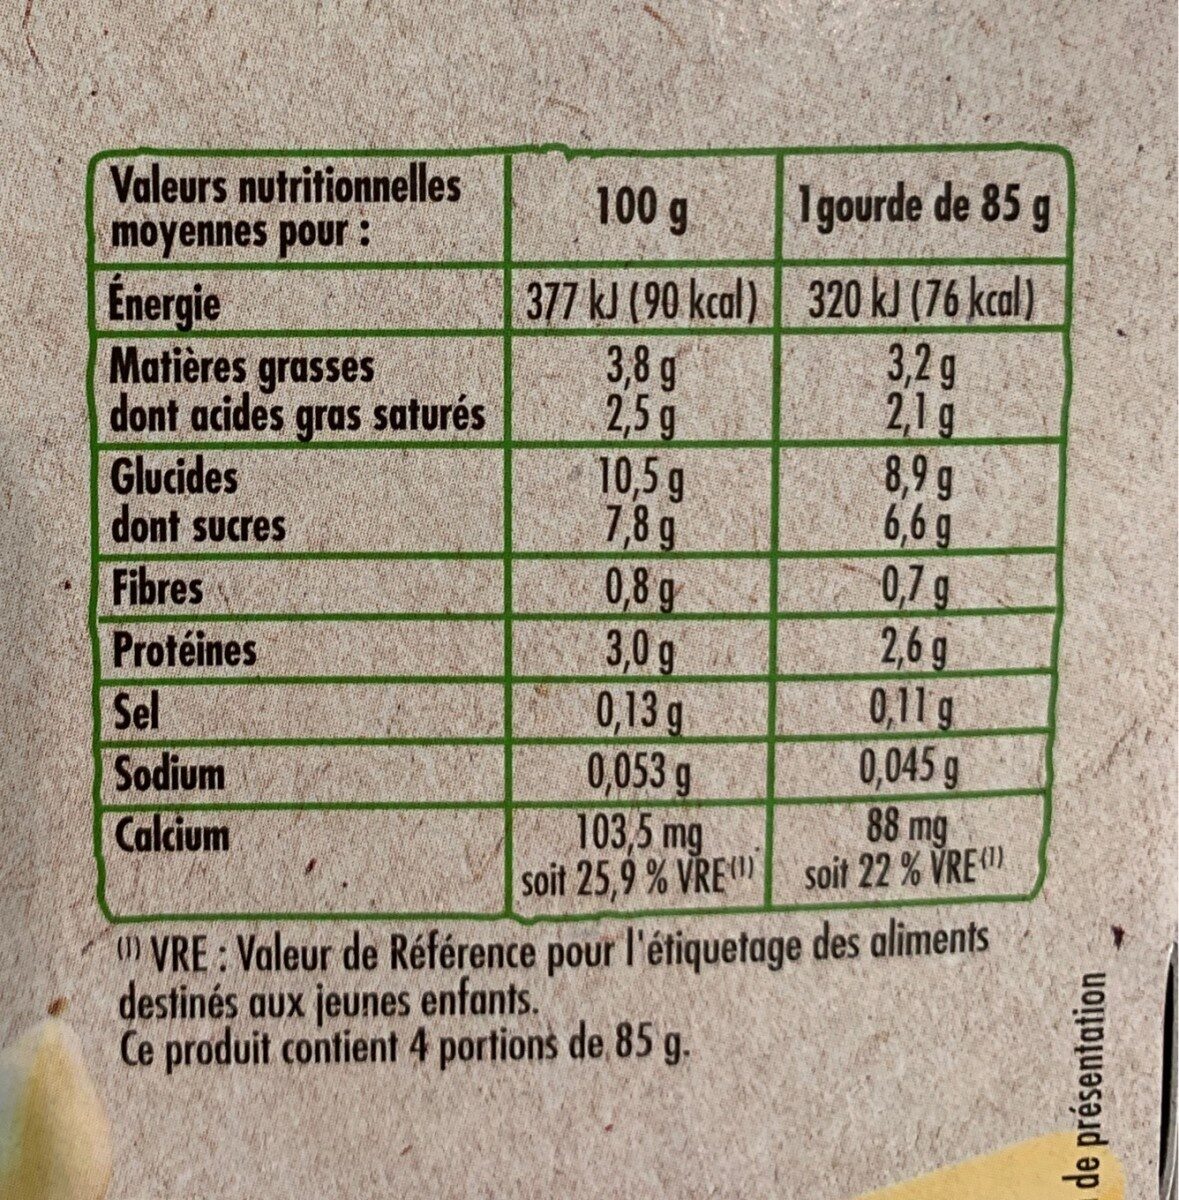 Creme a la vanille bio - Nutrition facts - fr